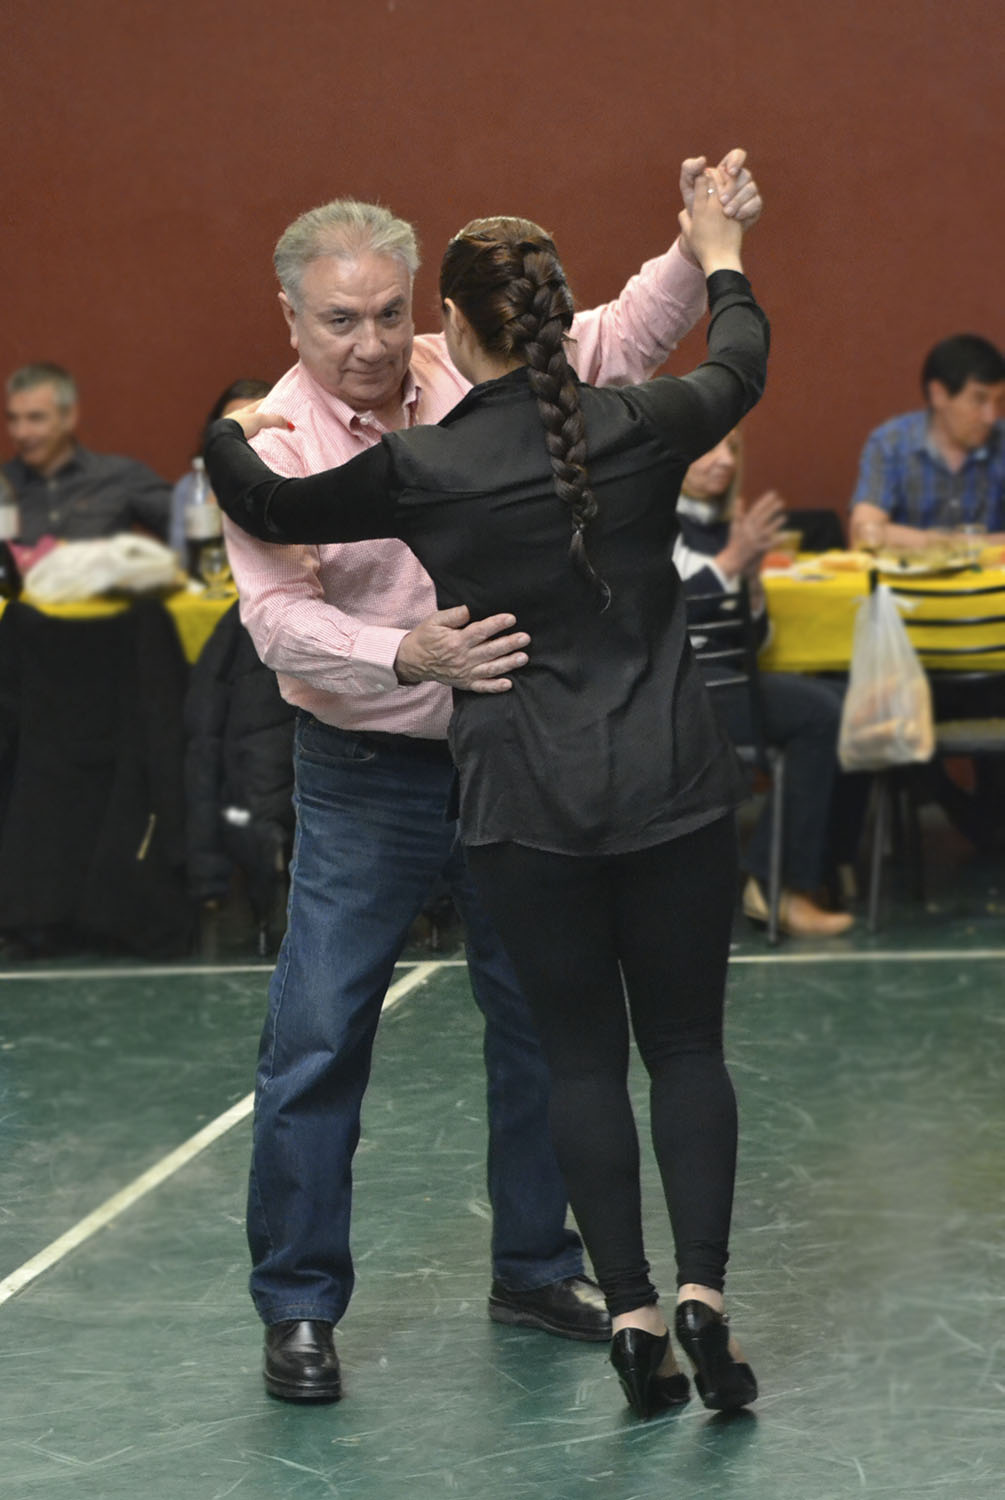 El Decano Ferreyra, bailando tango en el brindis de fin de año de la UTN.